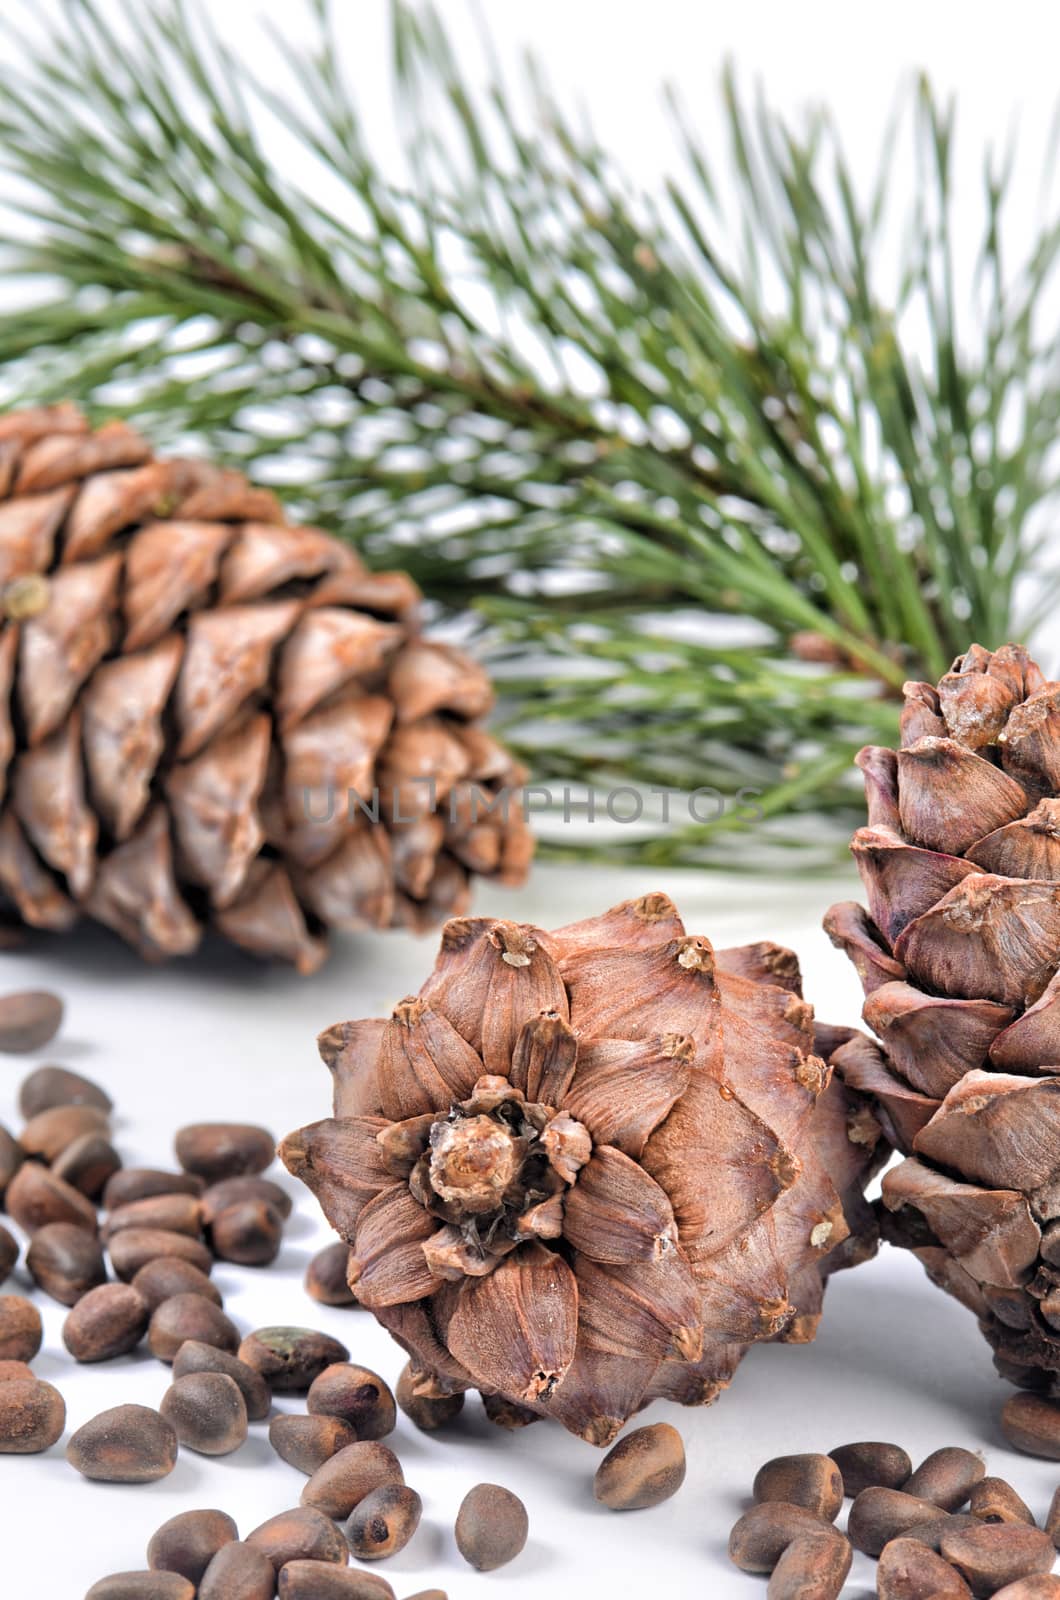 Cedar tree branch with cones and nuts